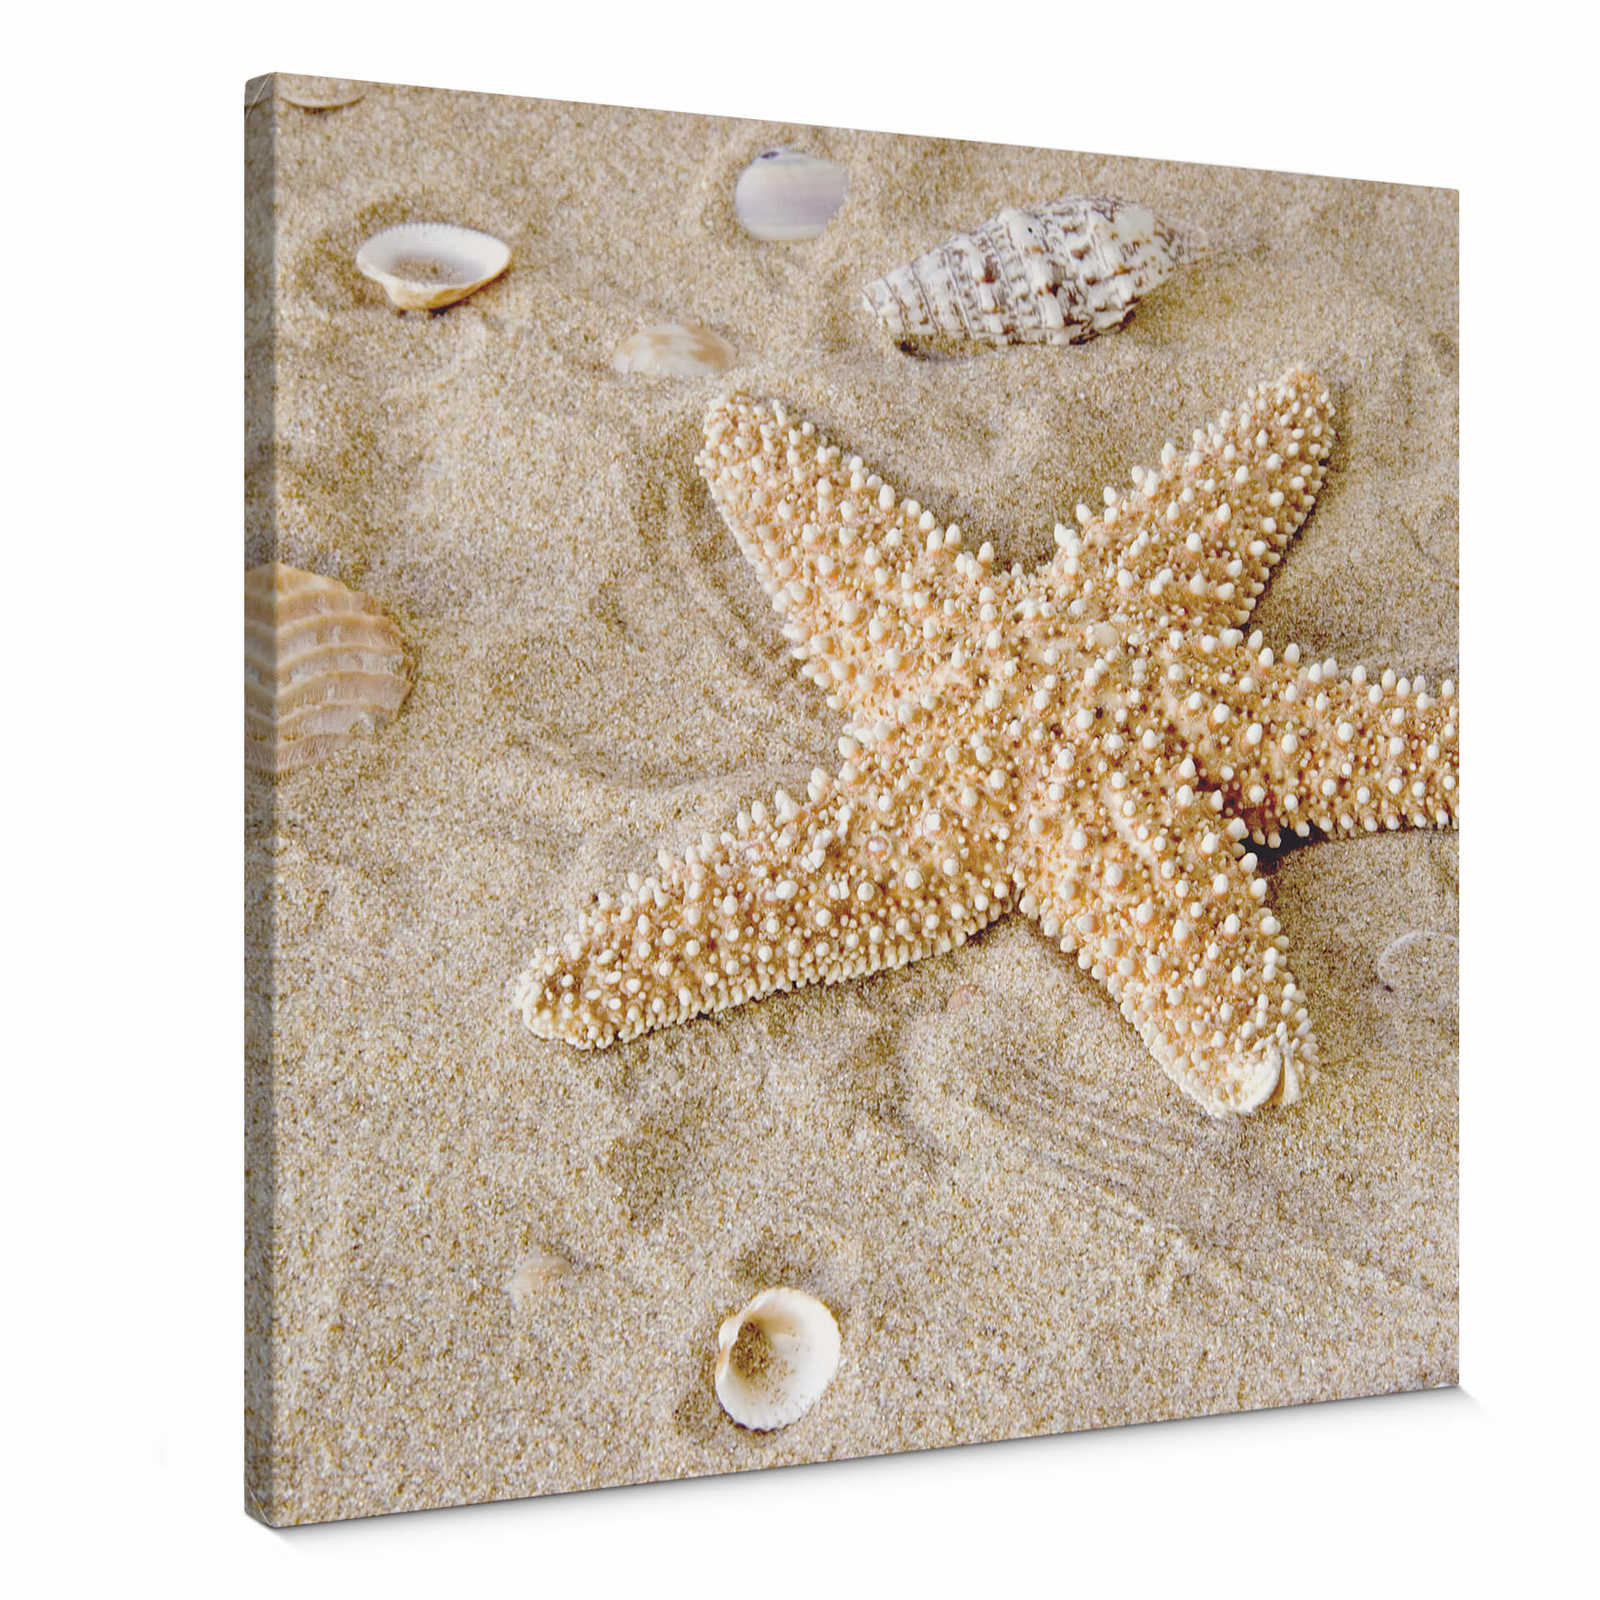 Cuadro lienzo cuadrado Estrella de mar en beige - 0,50 m x 0,50 m
